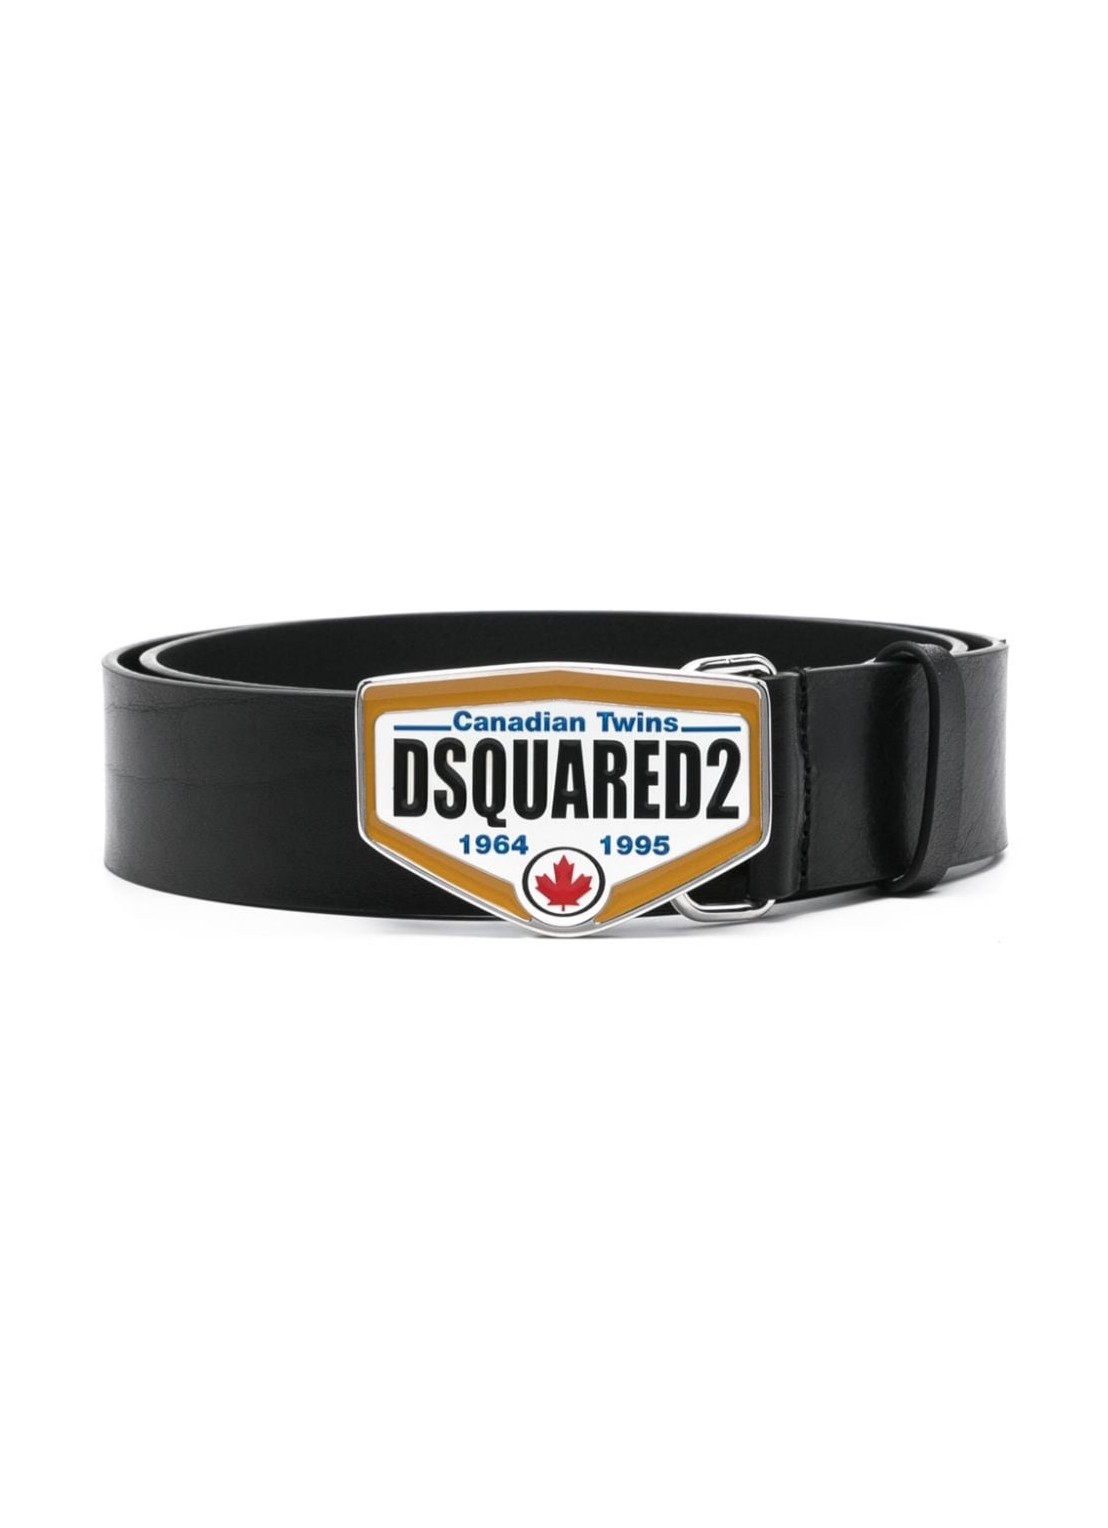 Cinturon dsquared belt man dsquared2 logo plaque belt bem056612900001 2124 talla 90
 